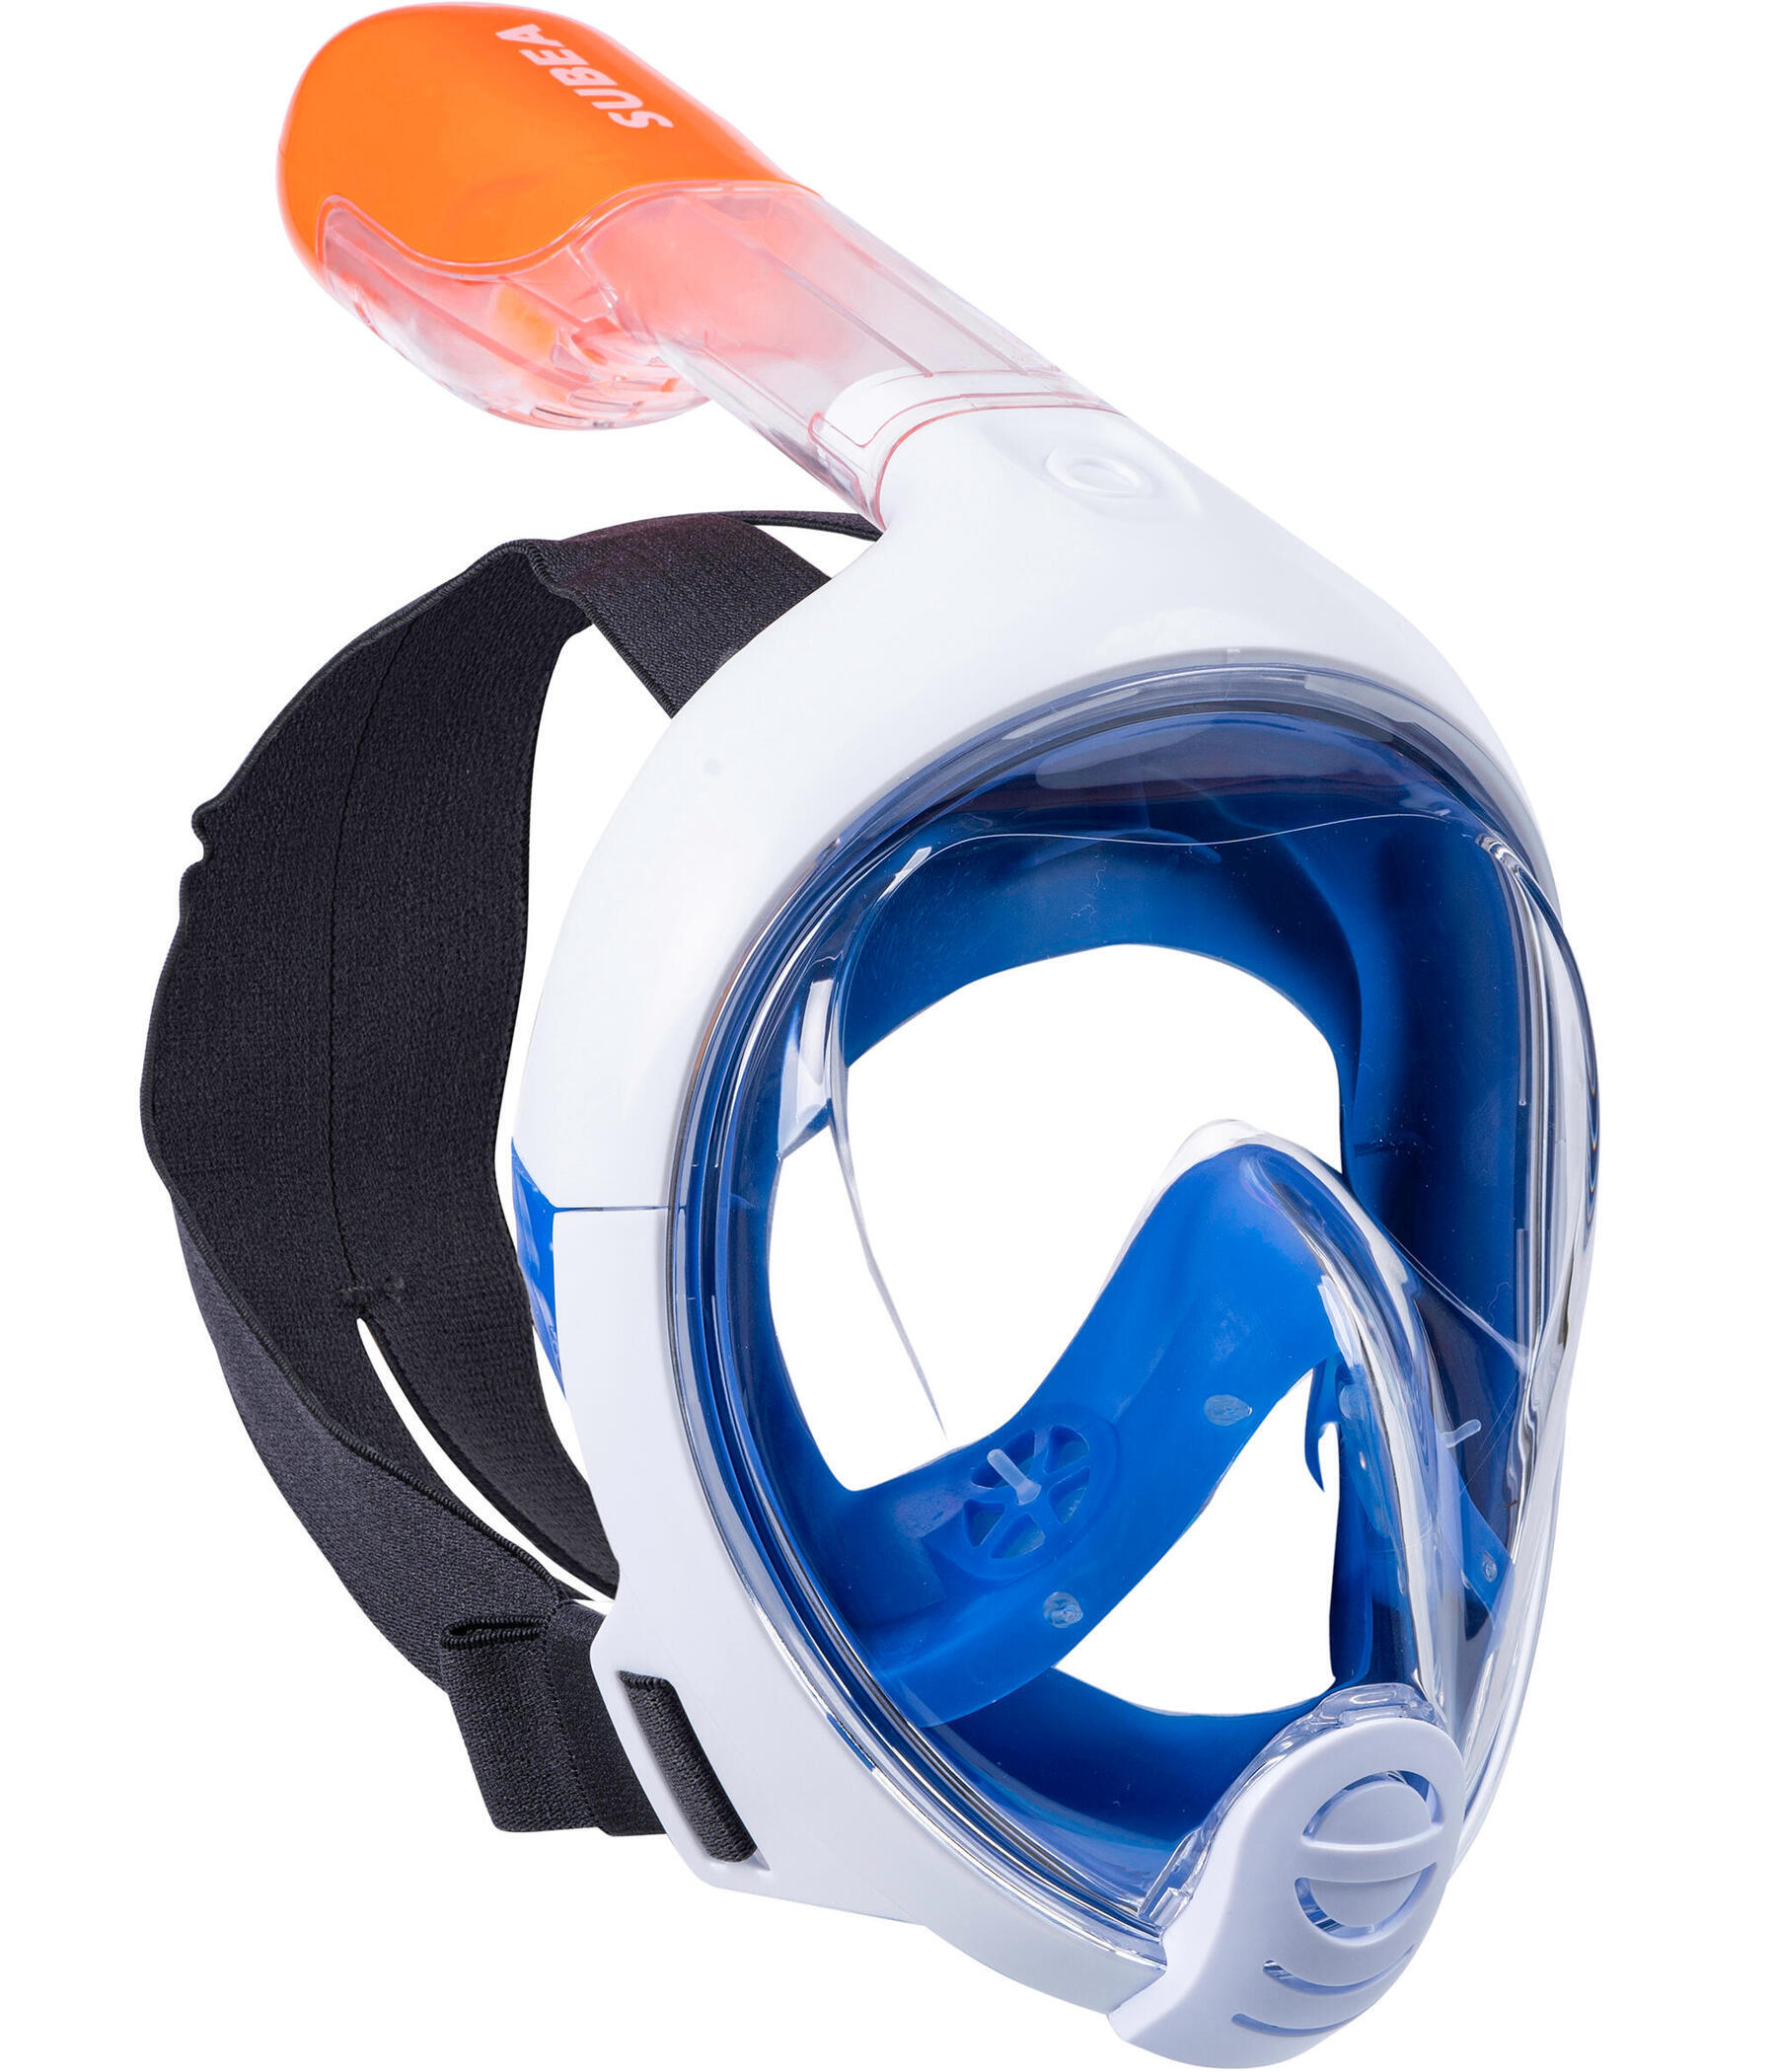 Le snorkeling devient facile avec le masque Easybreath de Subea !